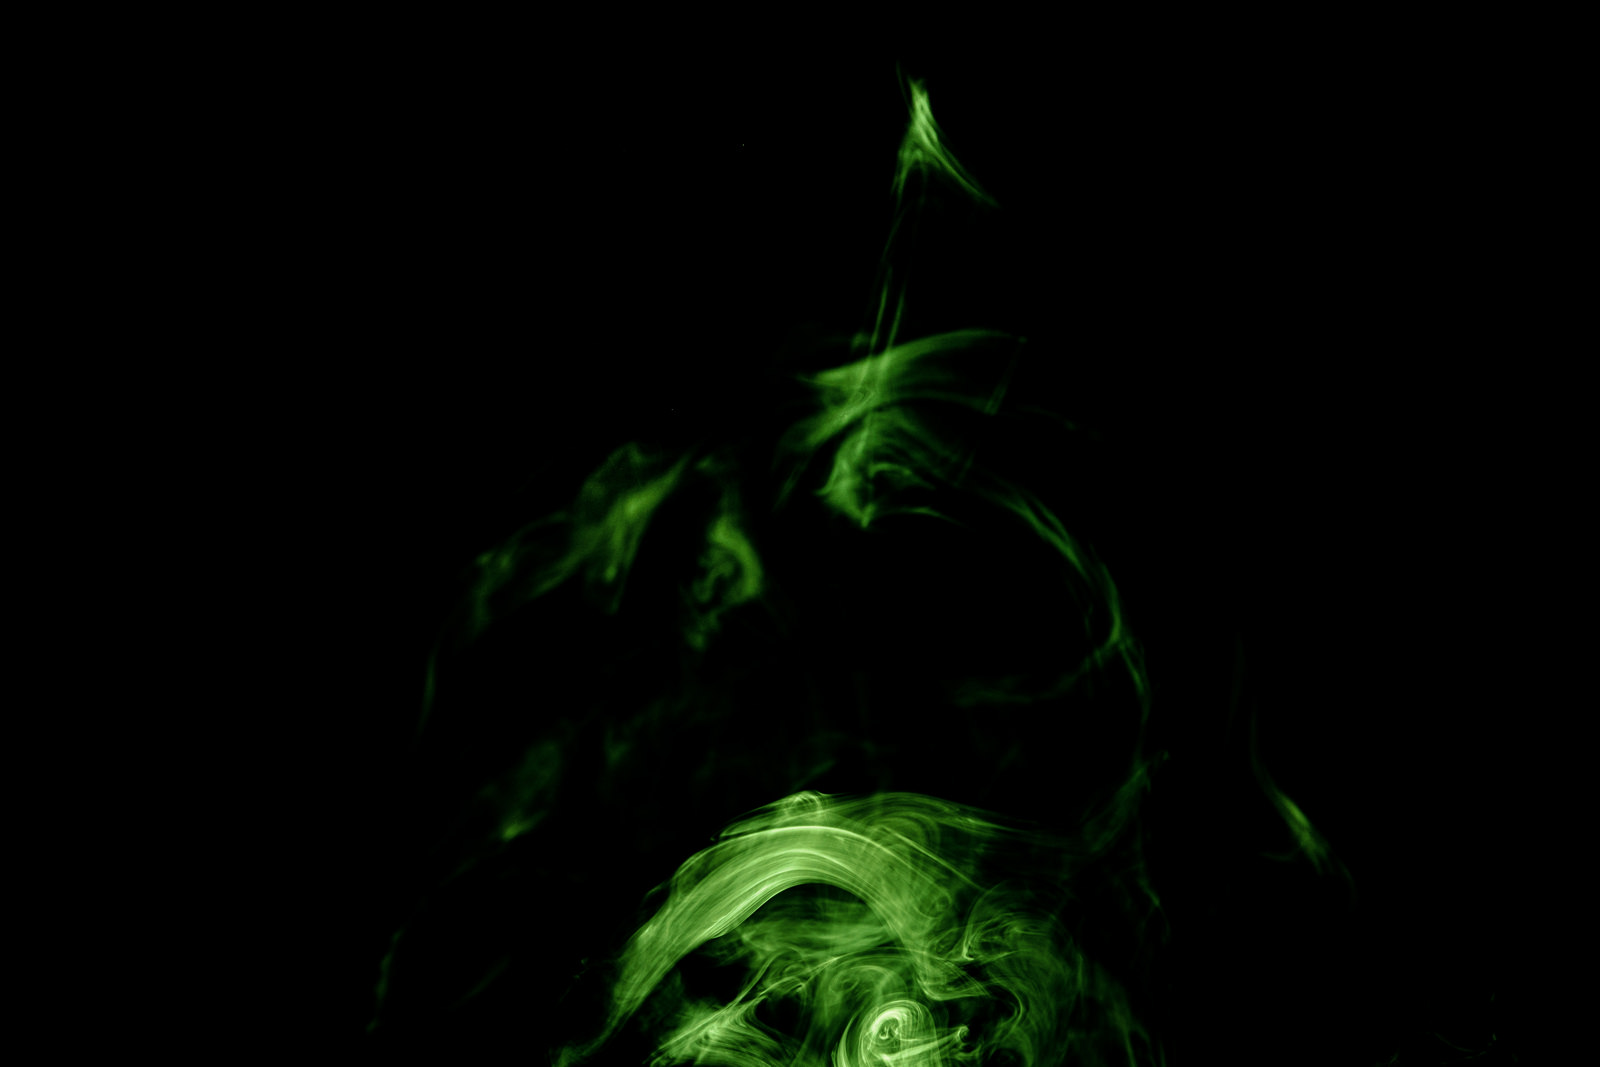 「うずまく緑色の煙」の写真